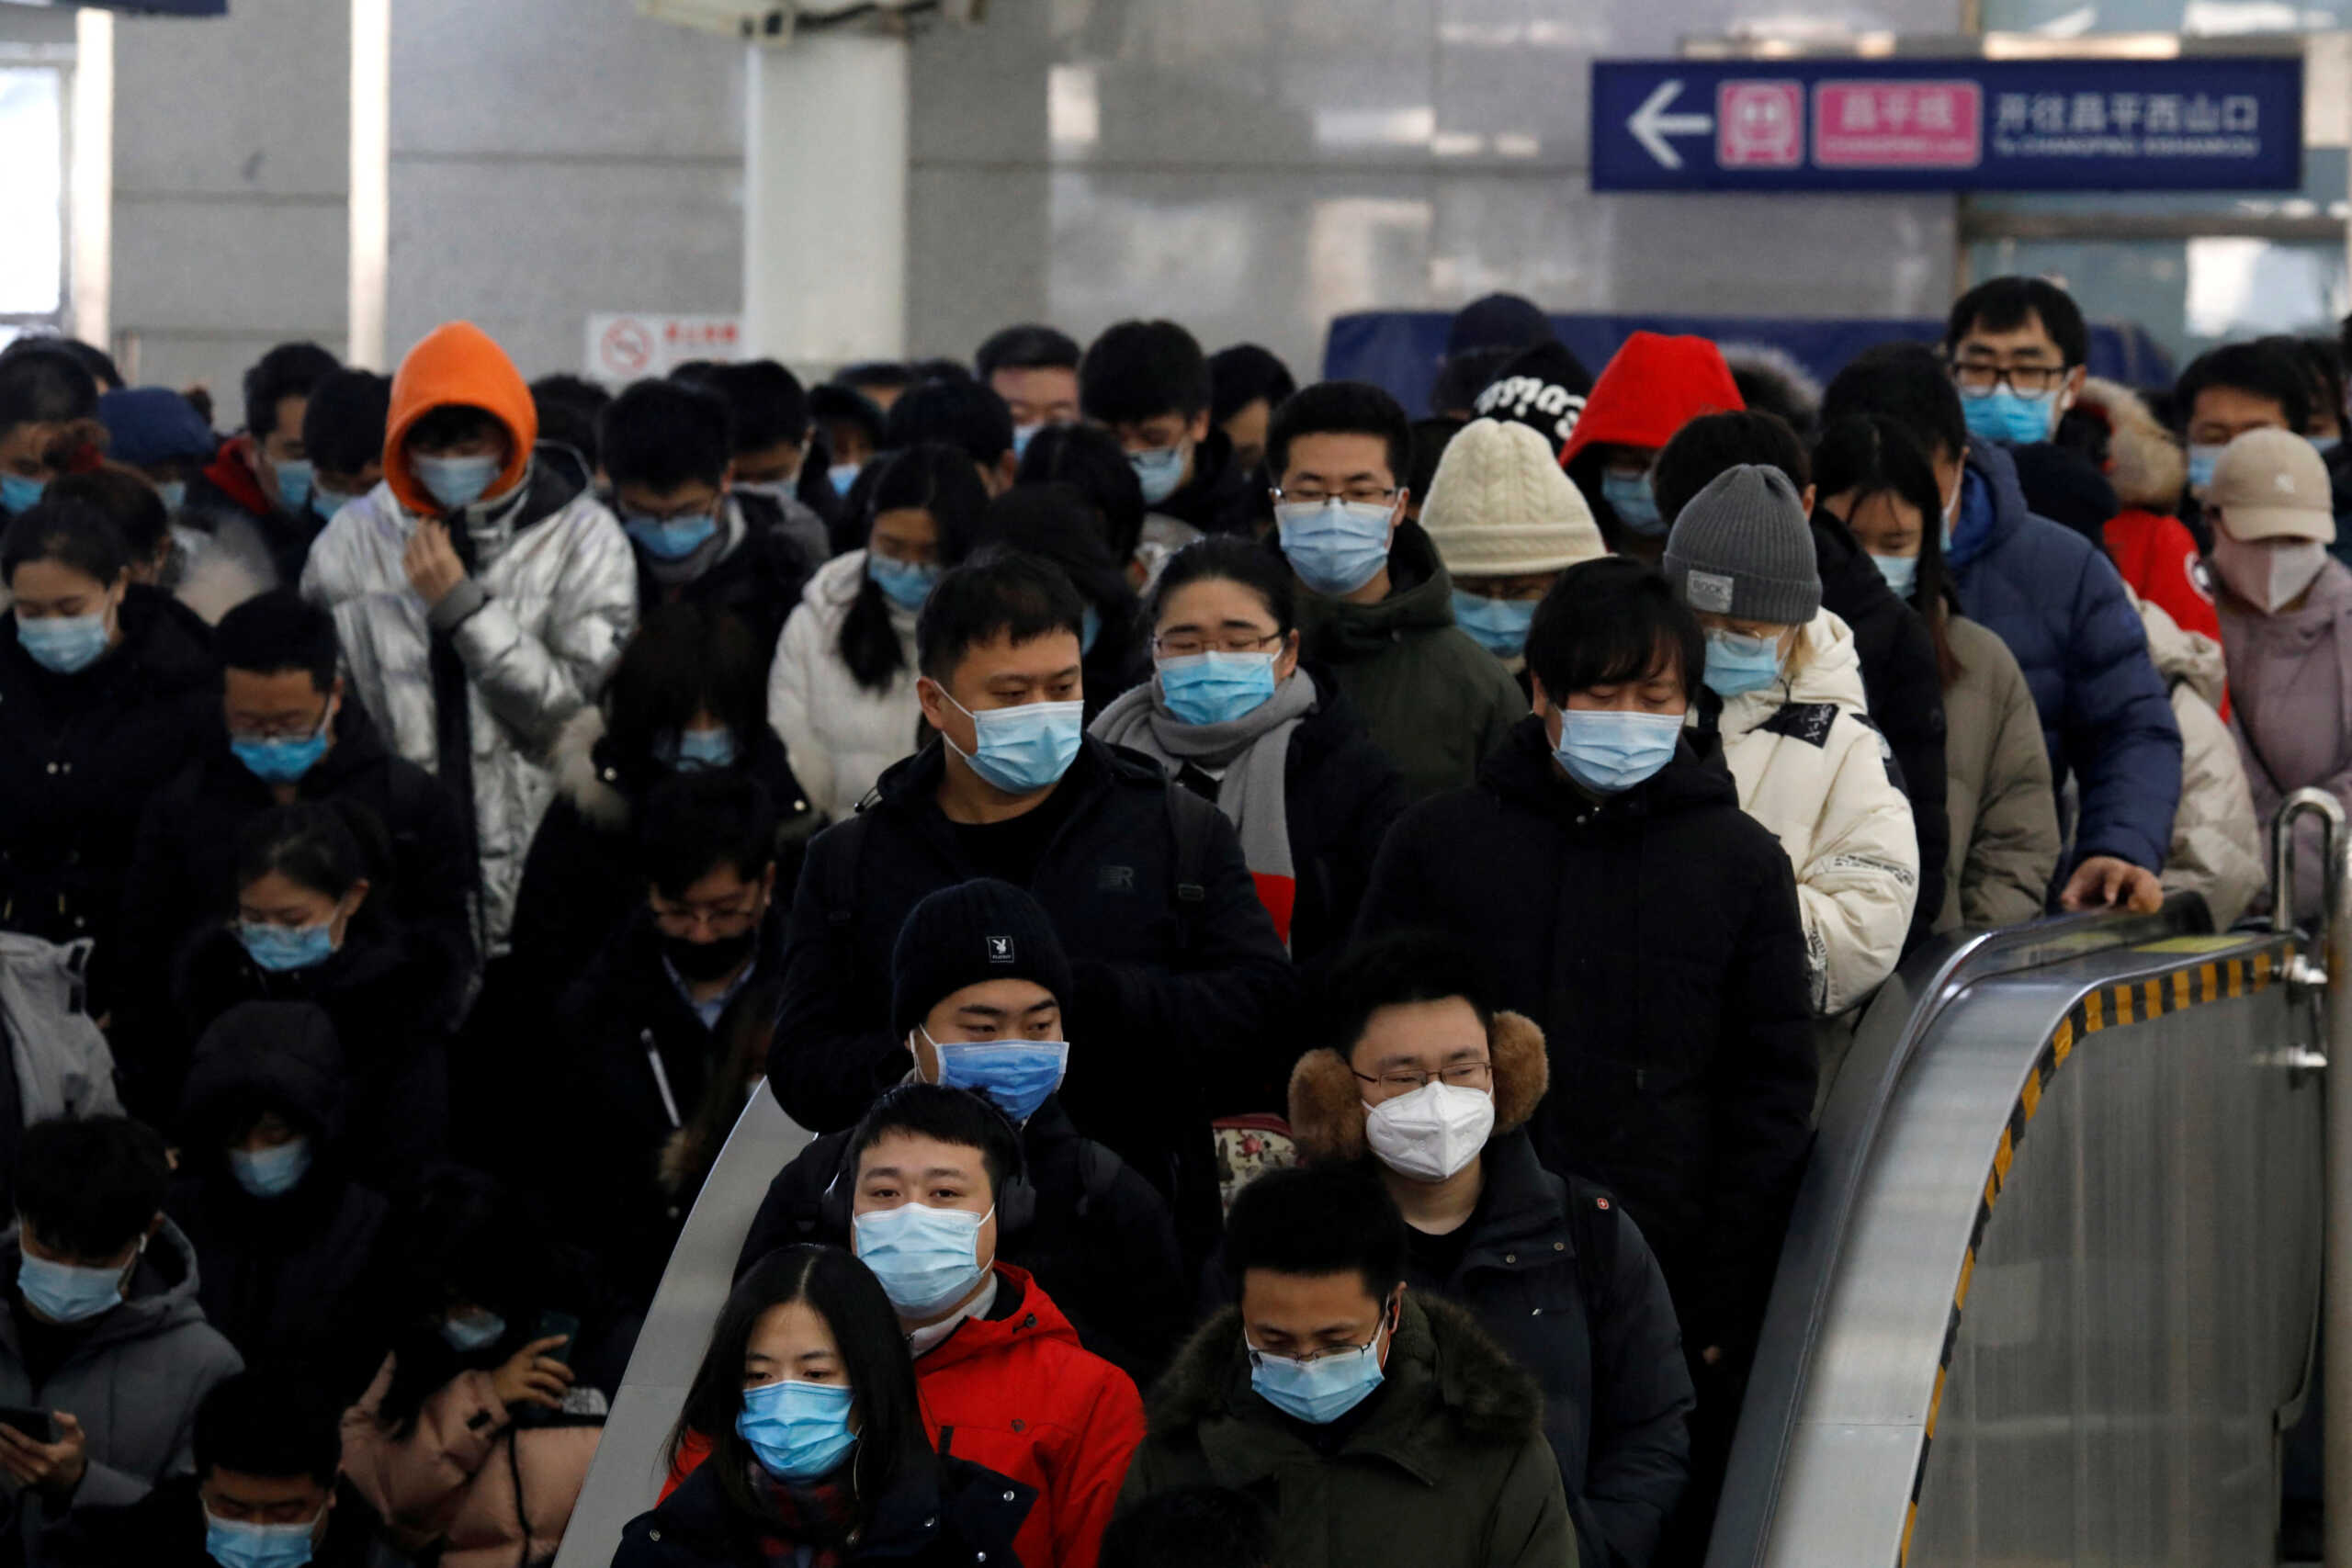 Χονγκ Κονγκ – Κορονοϊός: Τέλος από αύριο Πέμπτη όλοι οι περιορισμοί – Υποχρεωτική μόνο η χρήση μάσκας